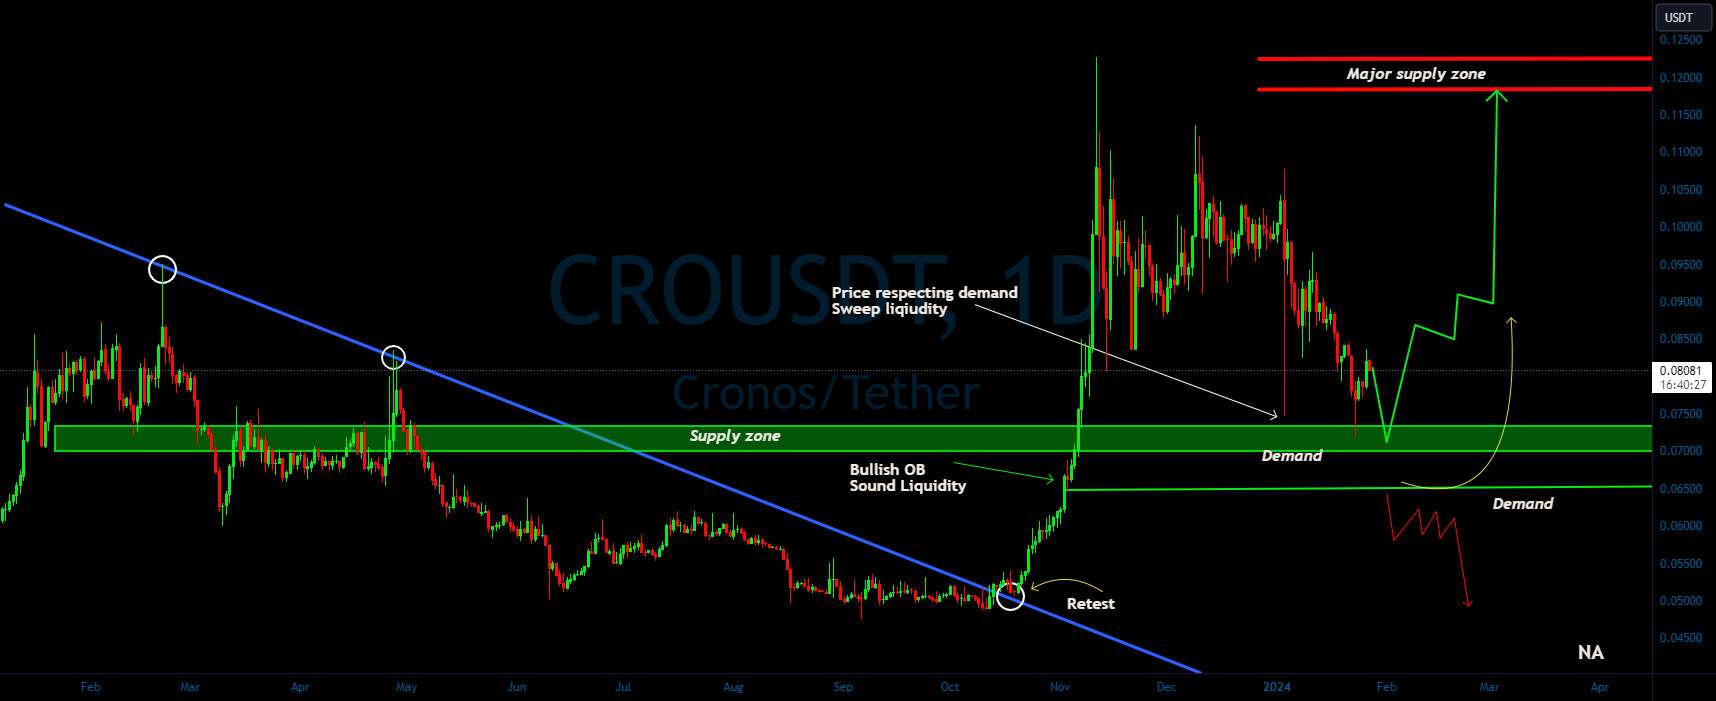  تحلیل Cronos - CRO/USDT یک چرخش صعودی از منطقه تقاضا را پیش بینی می کنید؟ 👀